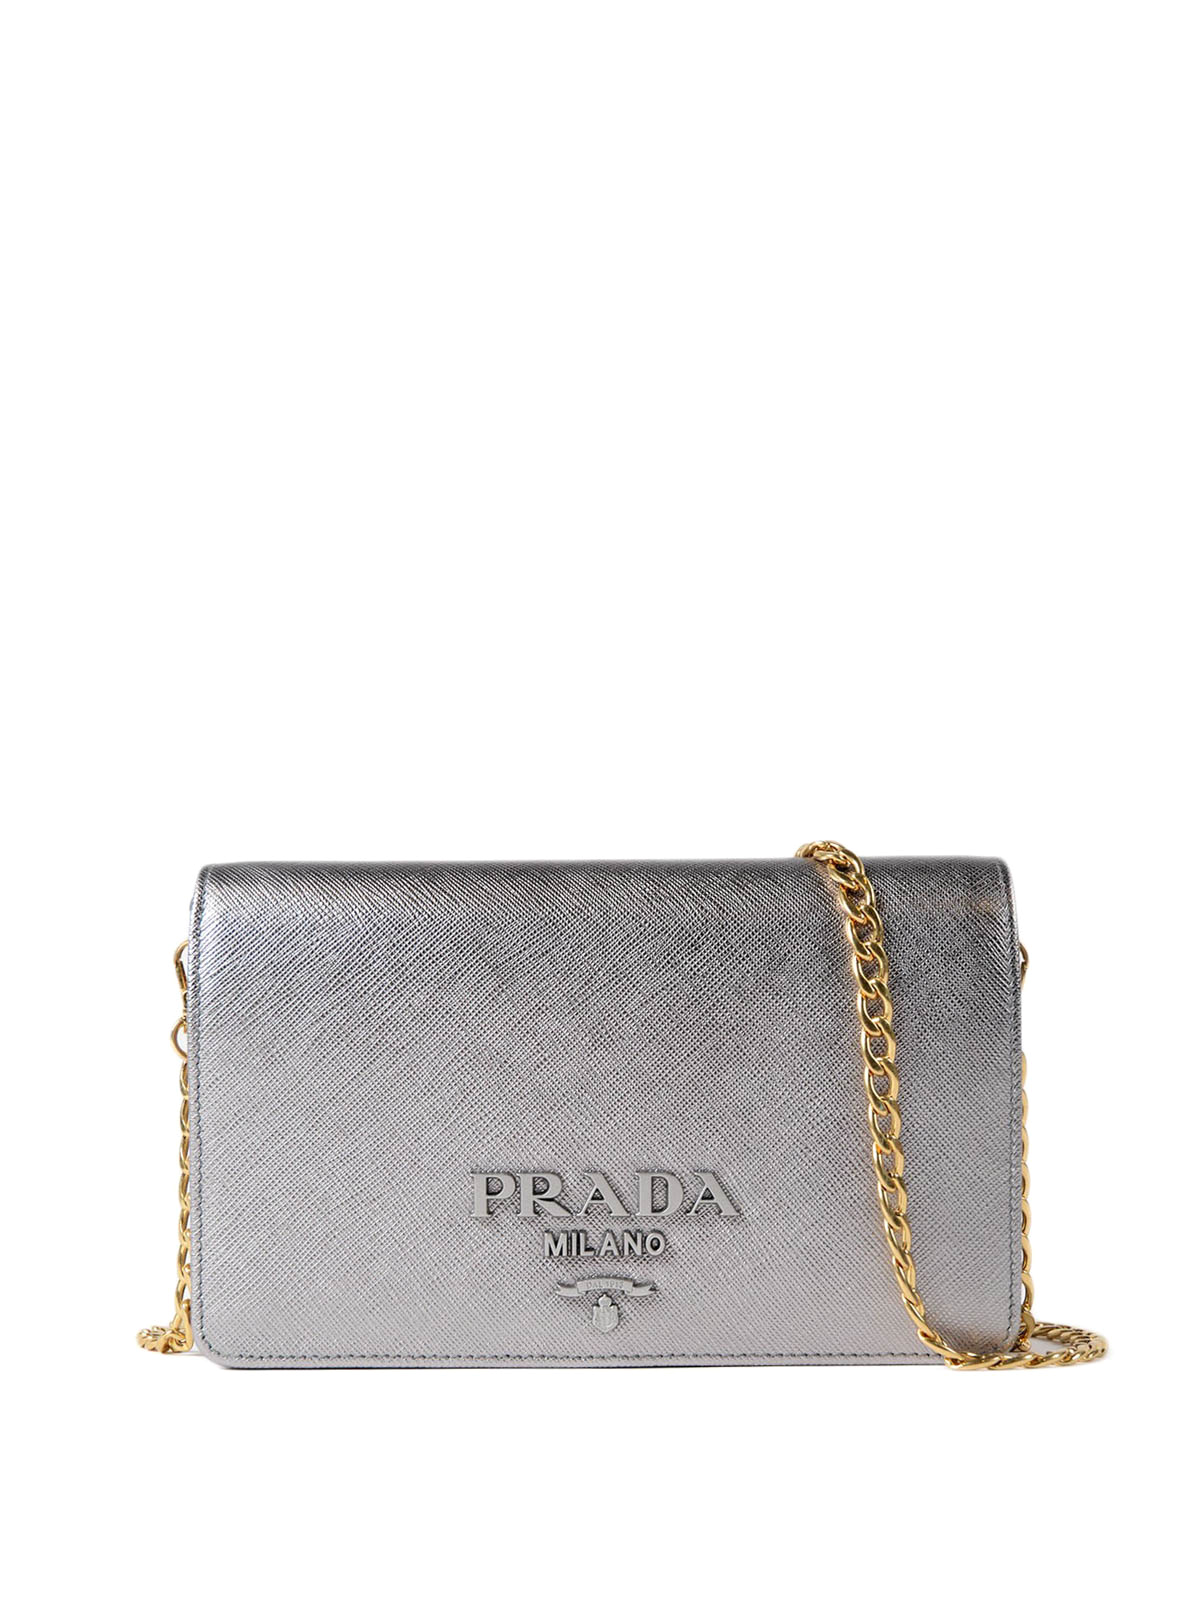 prada silver wallet